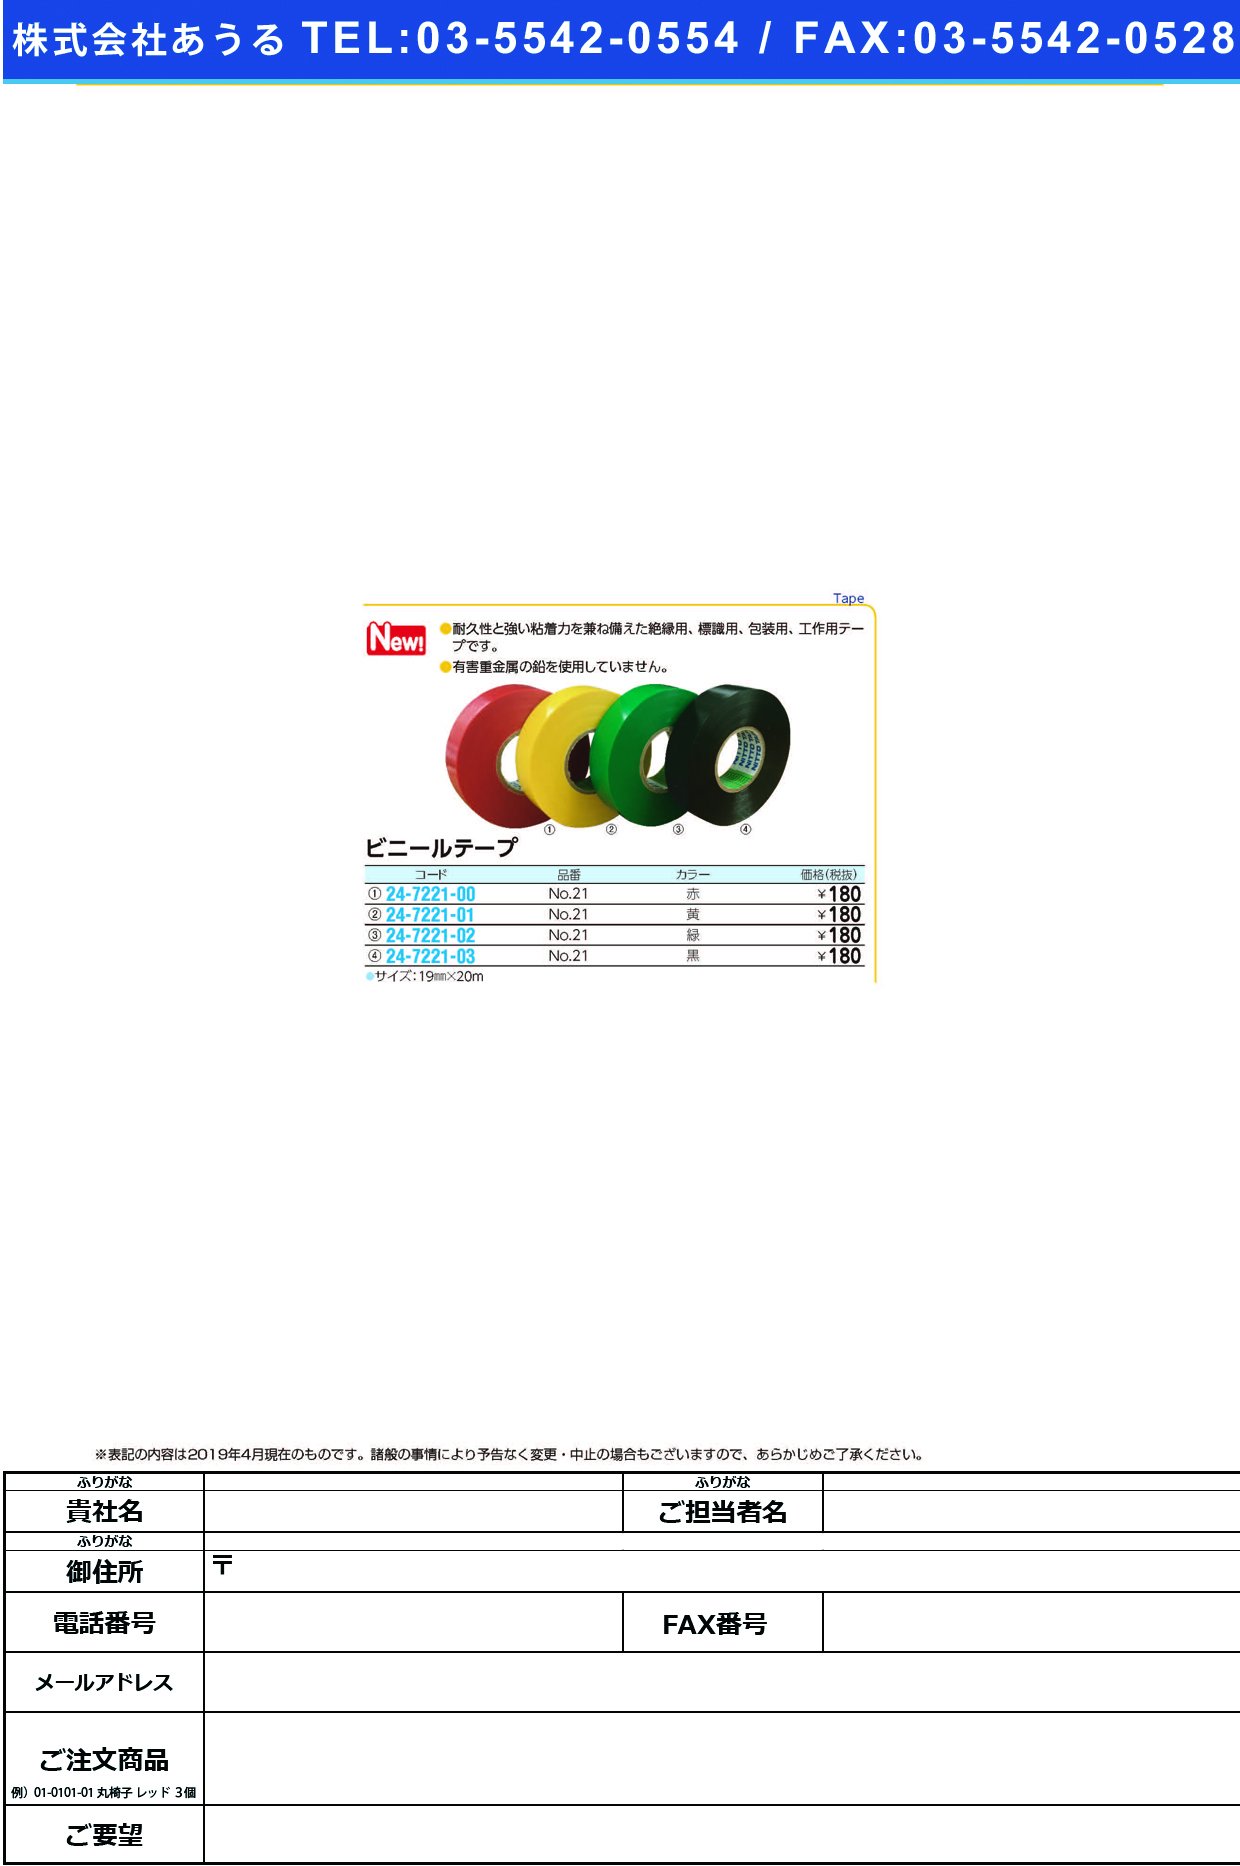 (24-7221-01)ビニールテープNO.21(ｷｲﾛ)19MMX20M ﾋﾞﾆｰﾙﾃｰﾌﾟ(コクゴ)【1巻単位】【2019年カタログ商品】